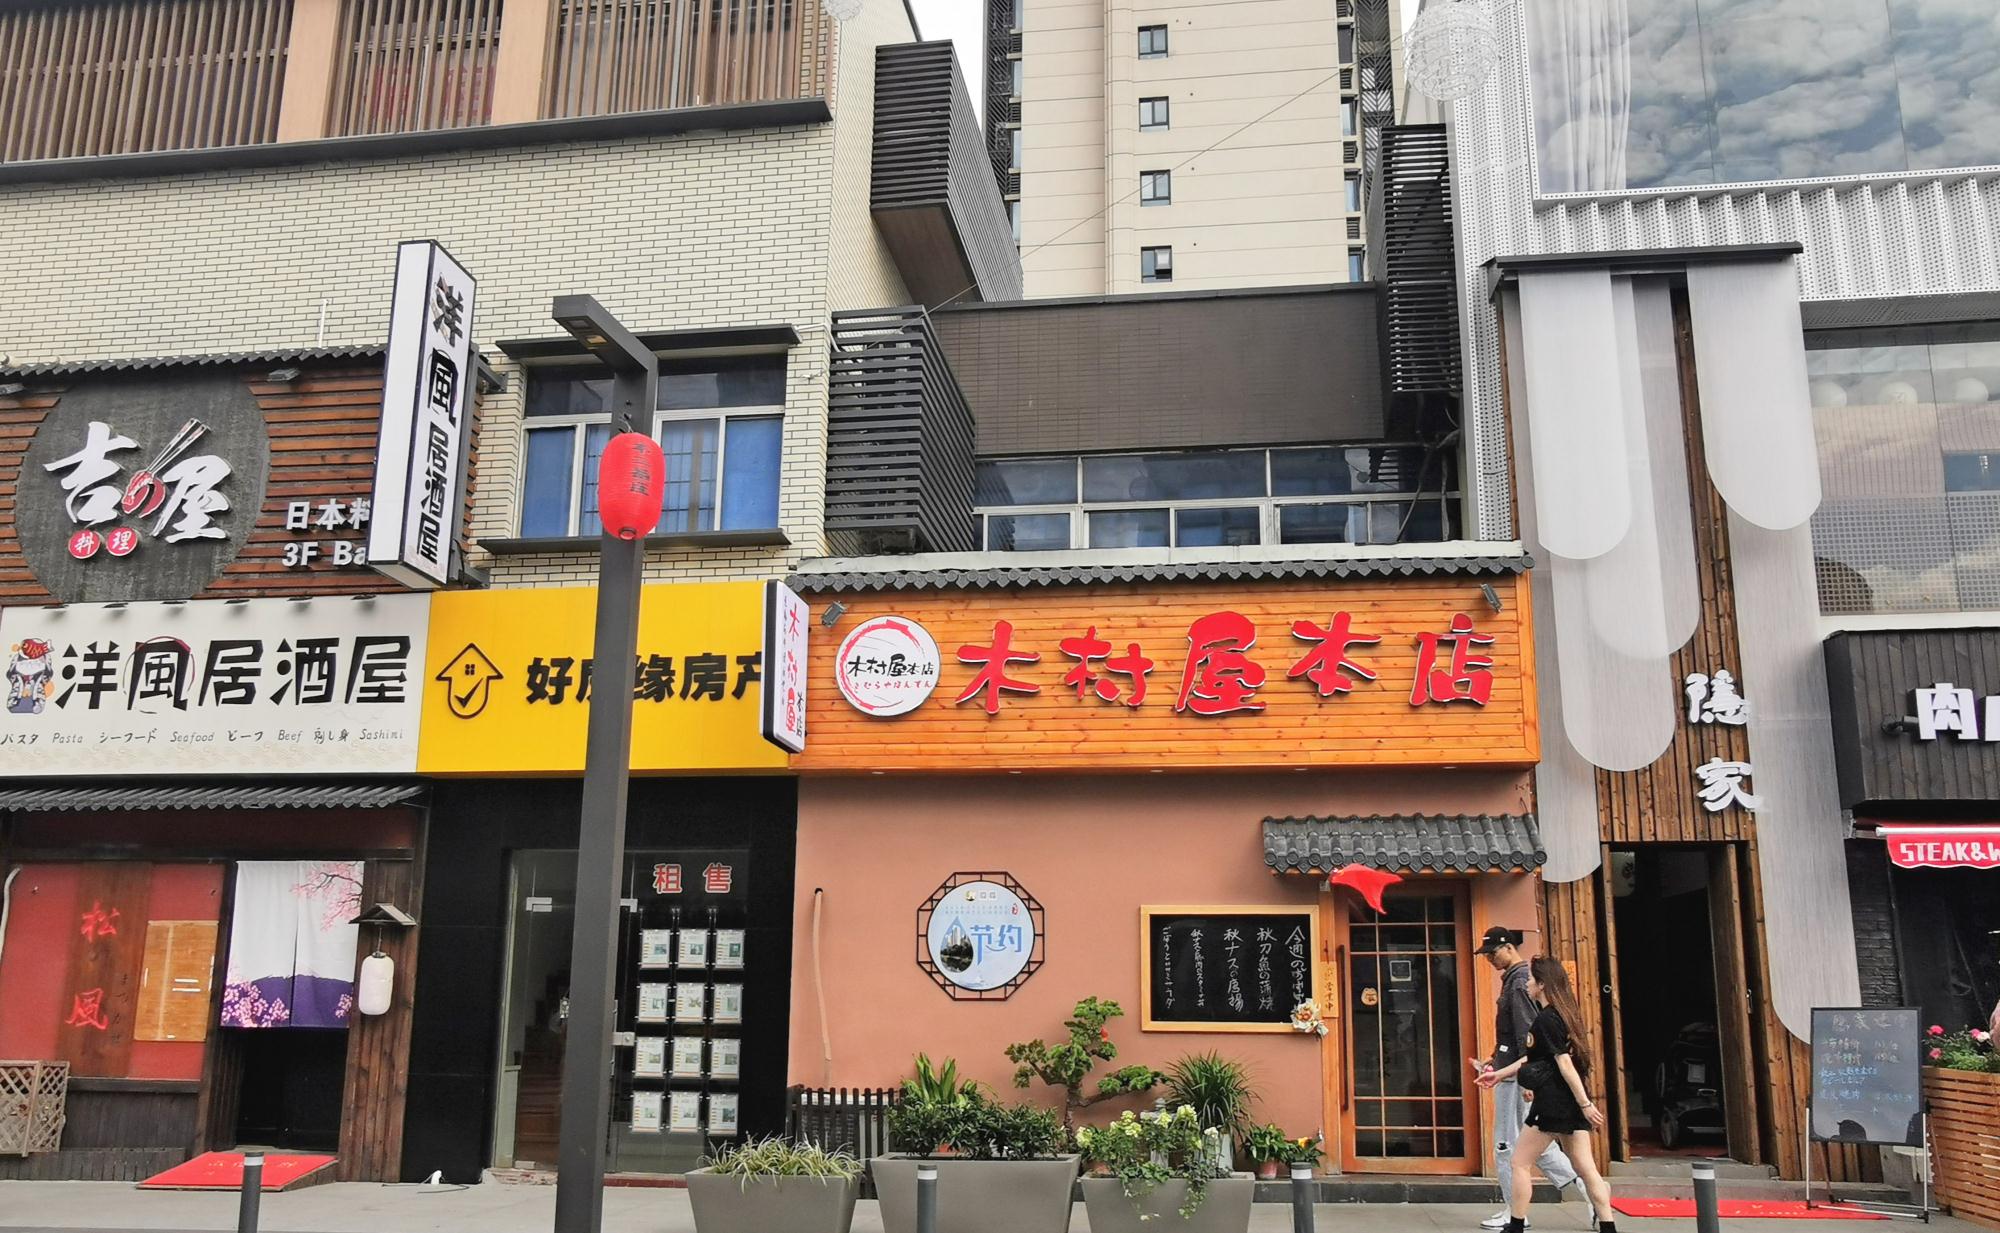 打卡苏州淮海街,这条翻建一新的美食街,弥漫着浓郁的日式风情 